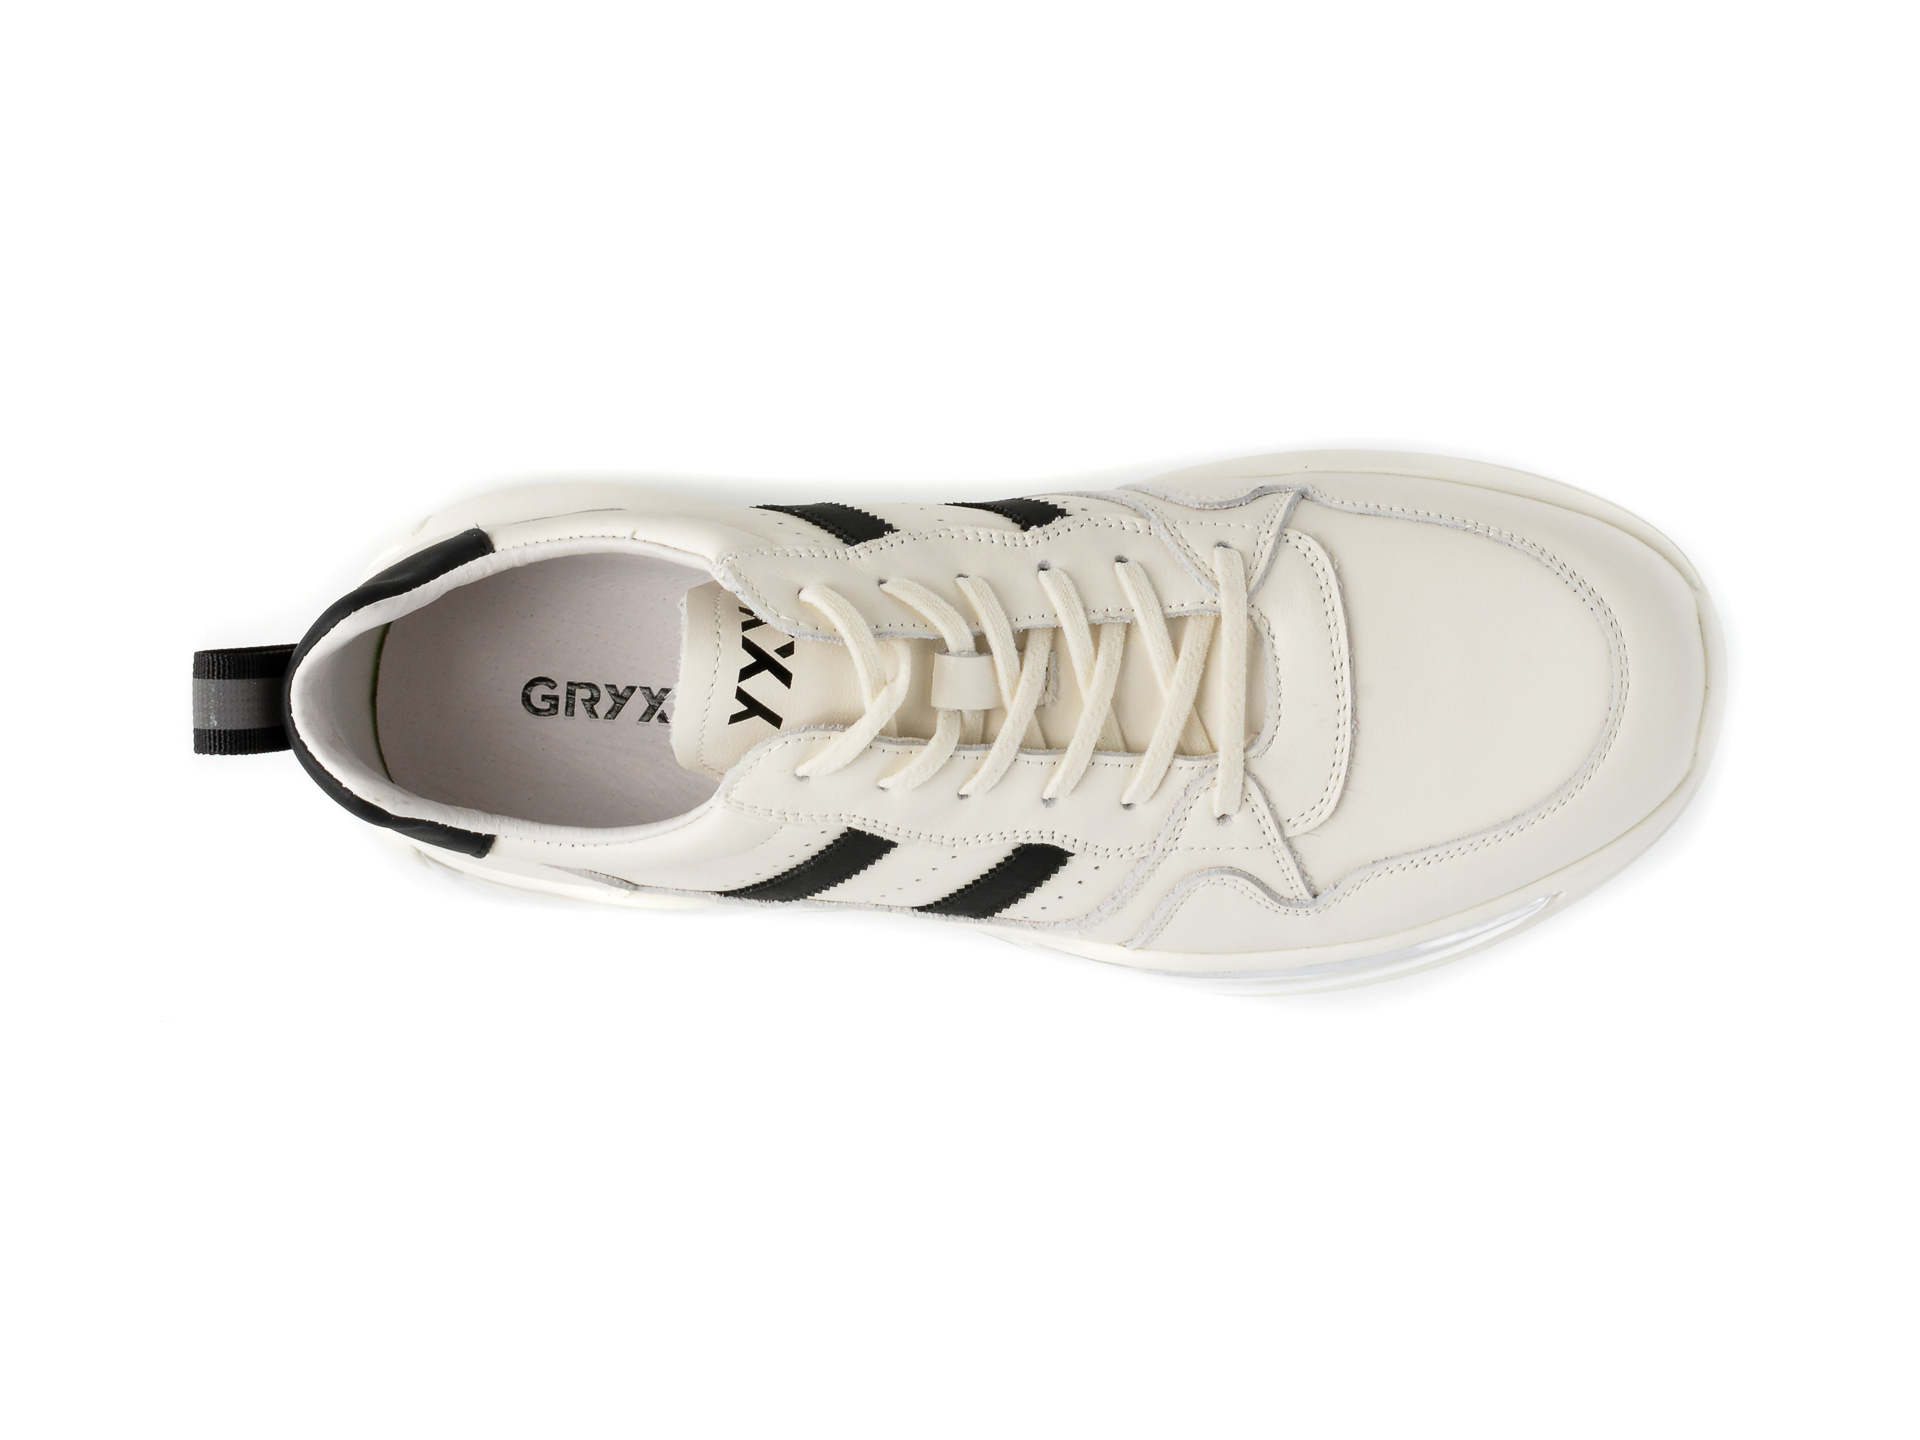 Poze Pantofi GRYXX albi, 53128, din piele naturala otter.ro